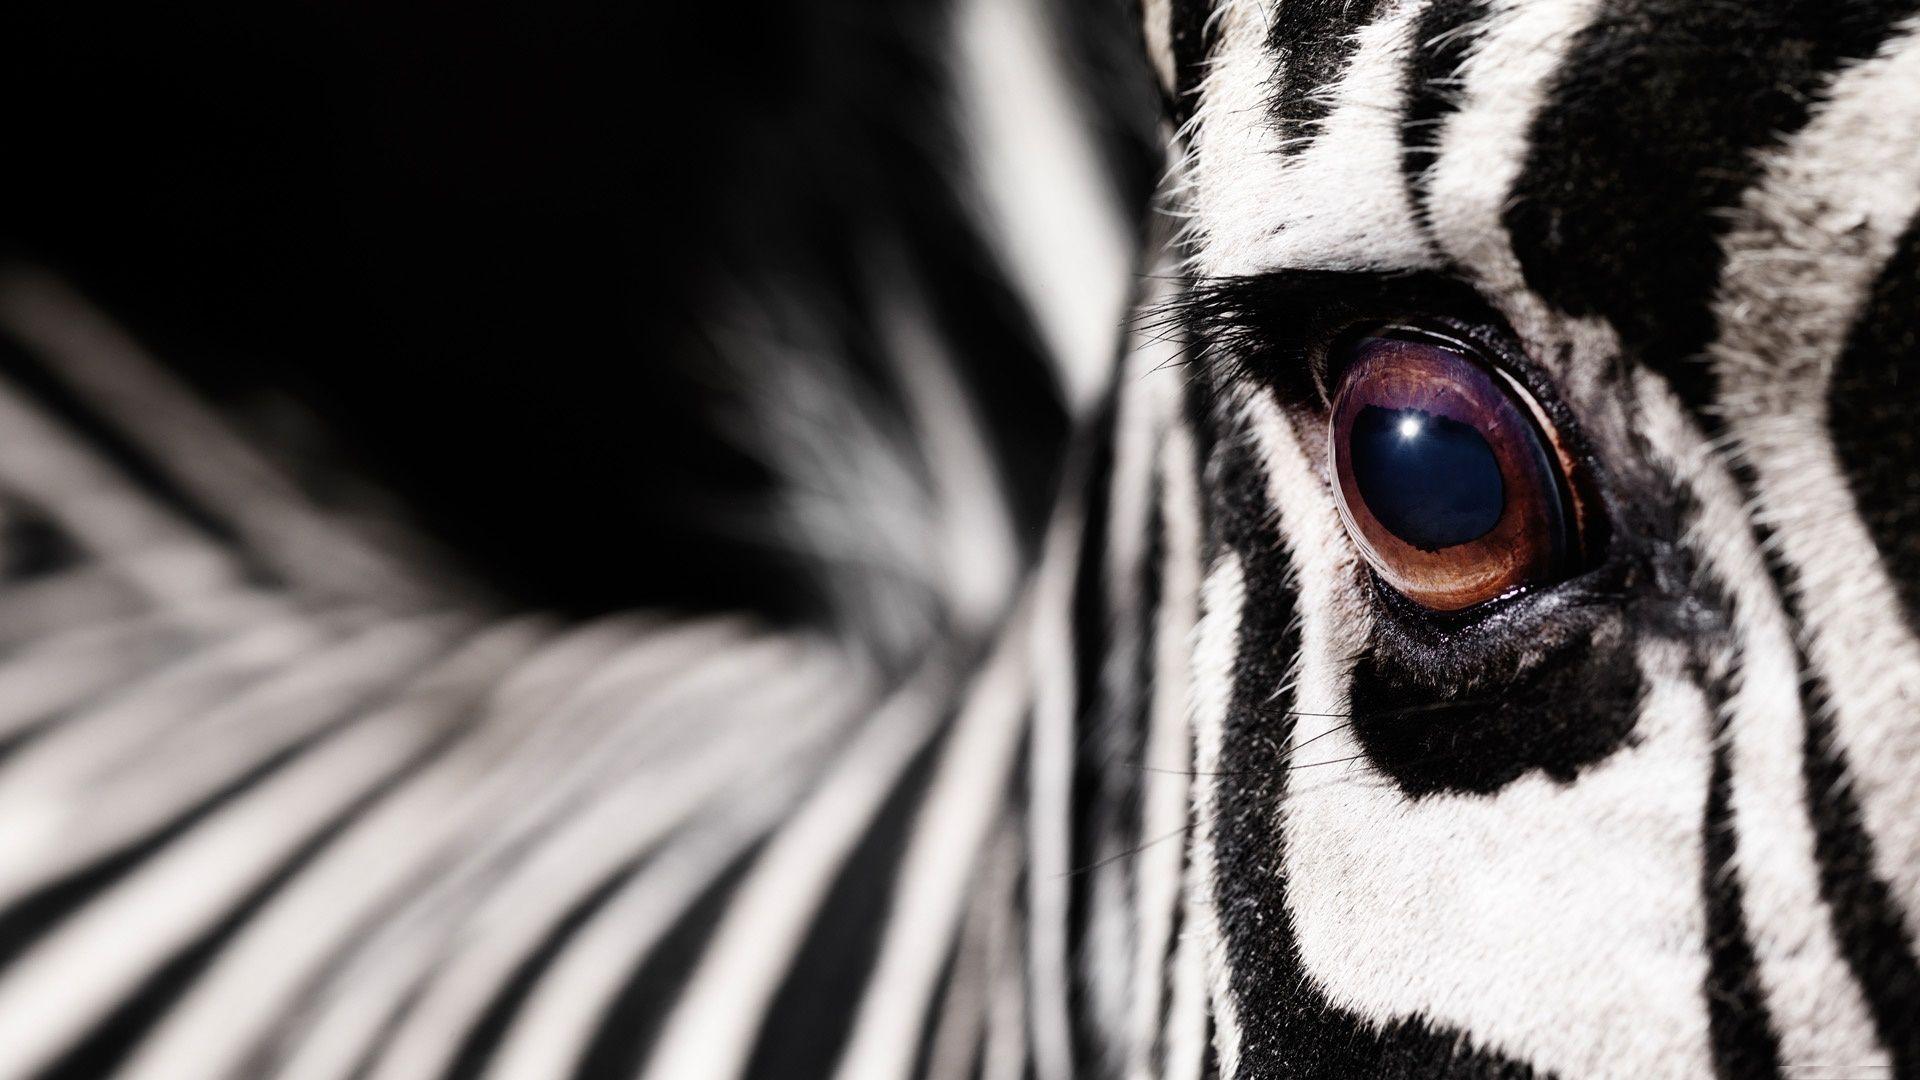 Download Zebra Wallpaper App Gallery 1920×1200 Zebra Image